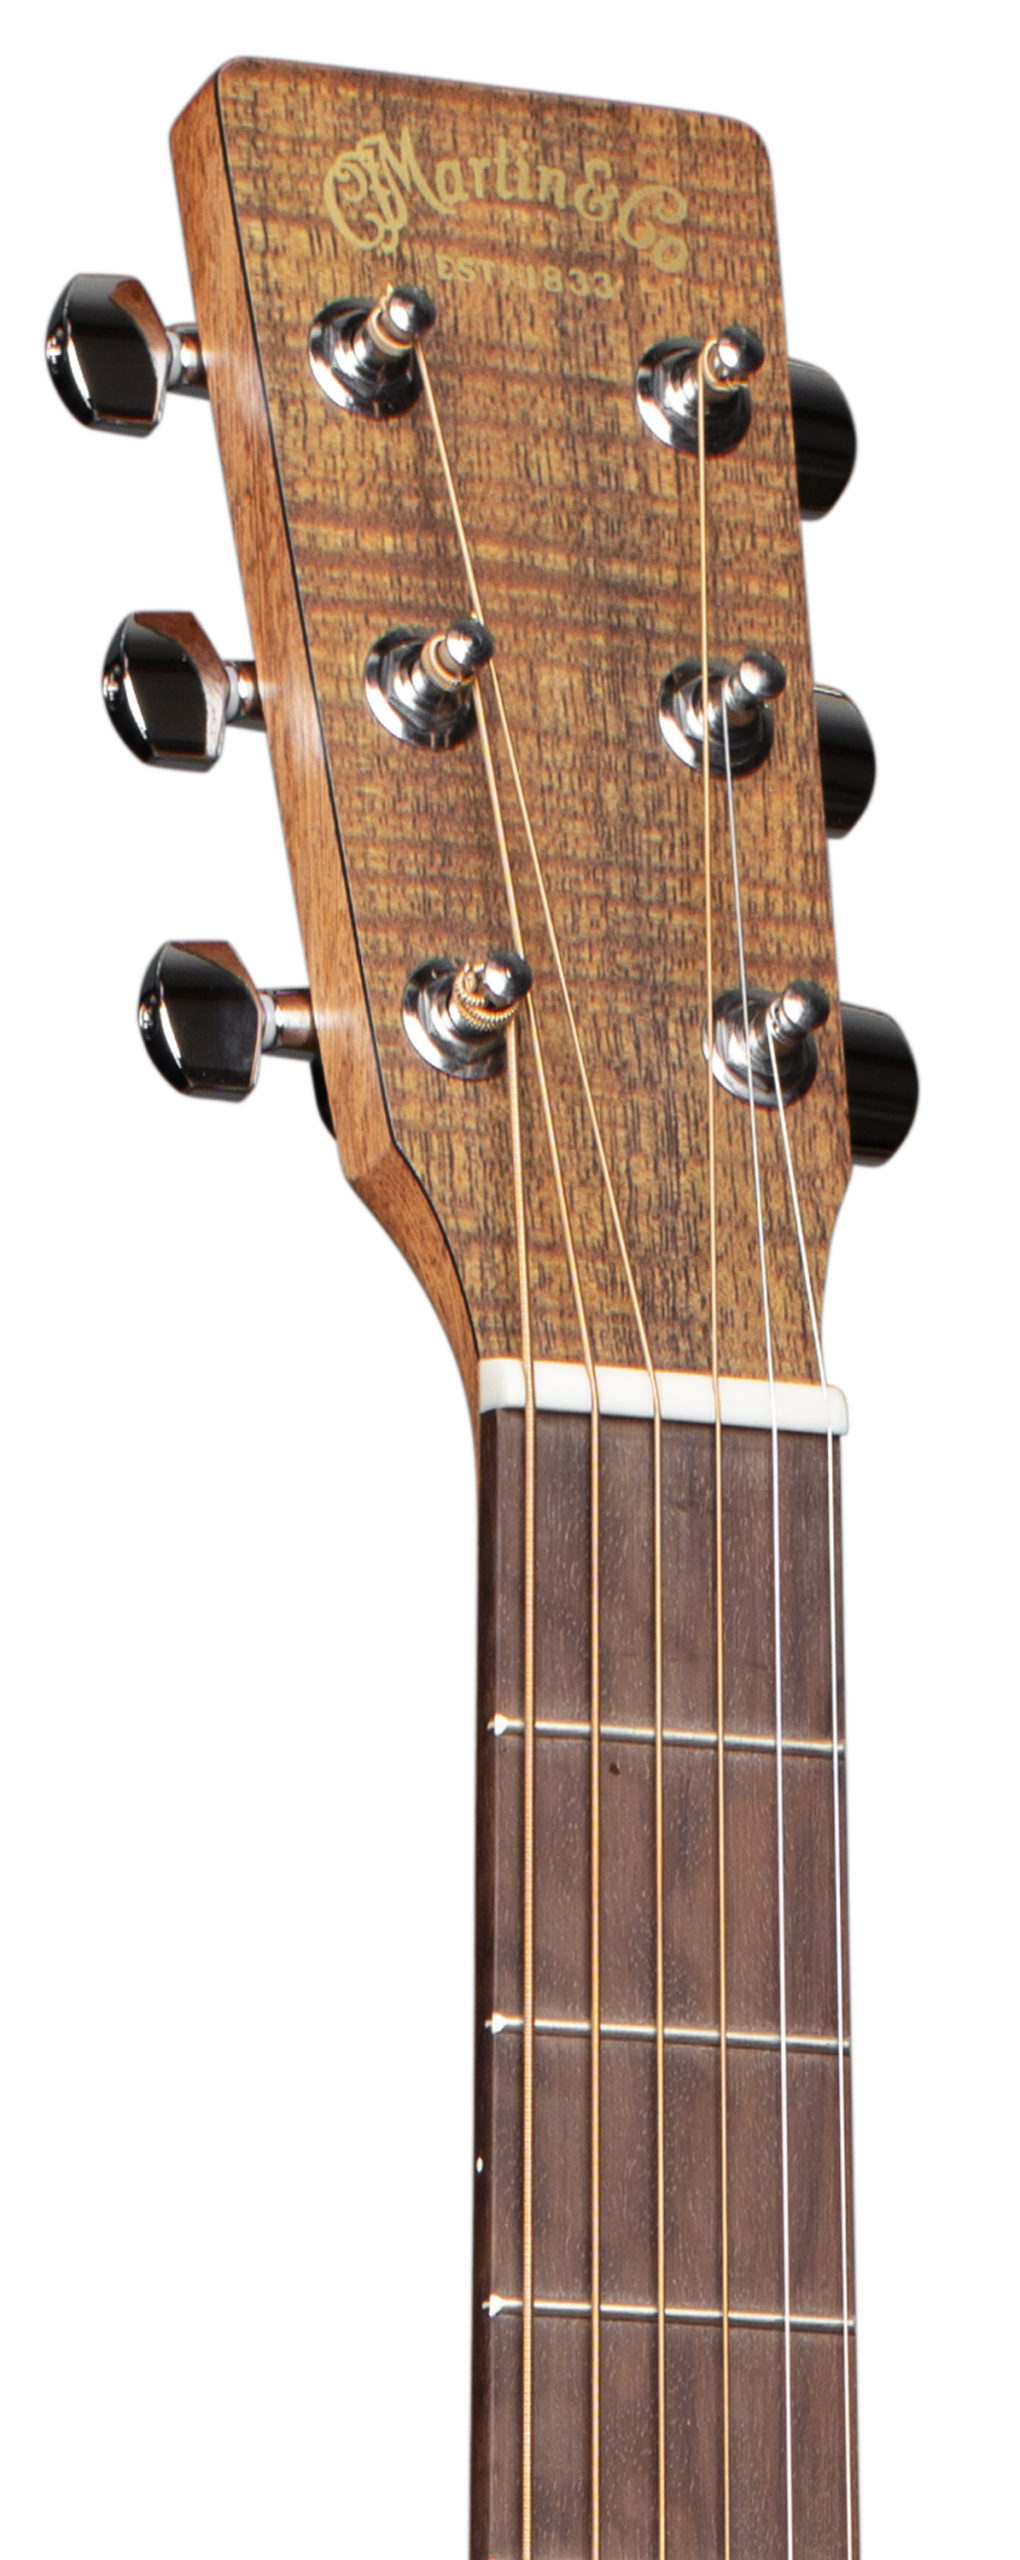 Martin D-X2E Koa Guitar